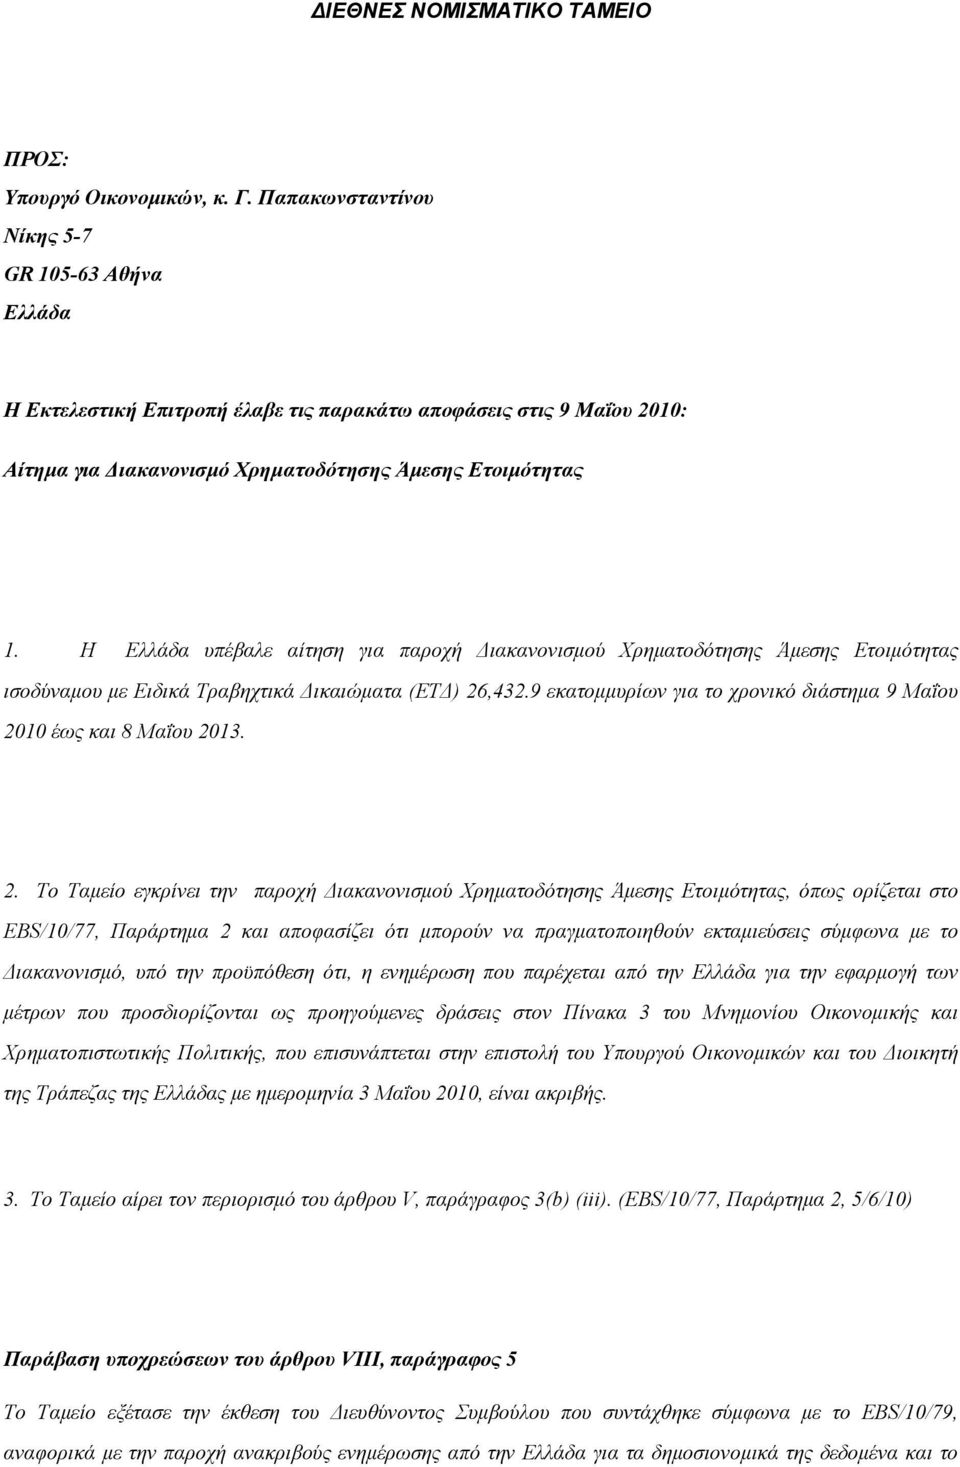 Η Ελλάδα υπέβαλε αίτηση για παροχή Διακανονισμού Χρηματοδότησης Άμεσης Ετοιμότητας ισοδύναμου με Ειδικά Τραβηχτικά Δικαιώματα (ΕΤΔ) 26,432.